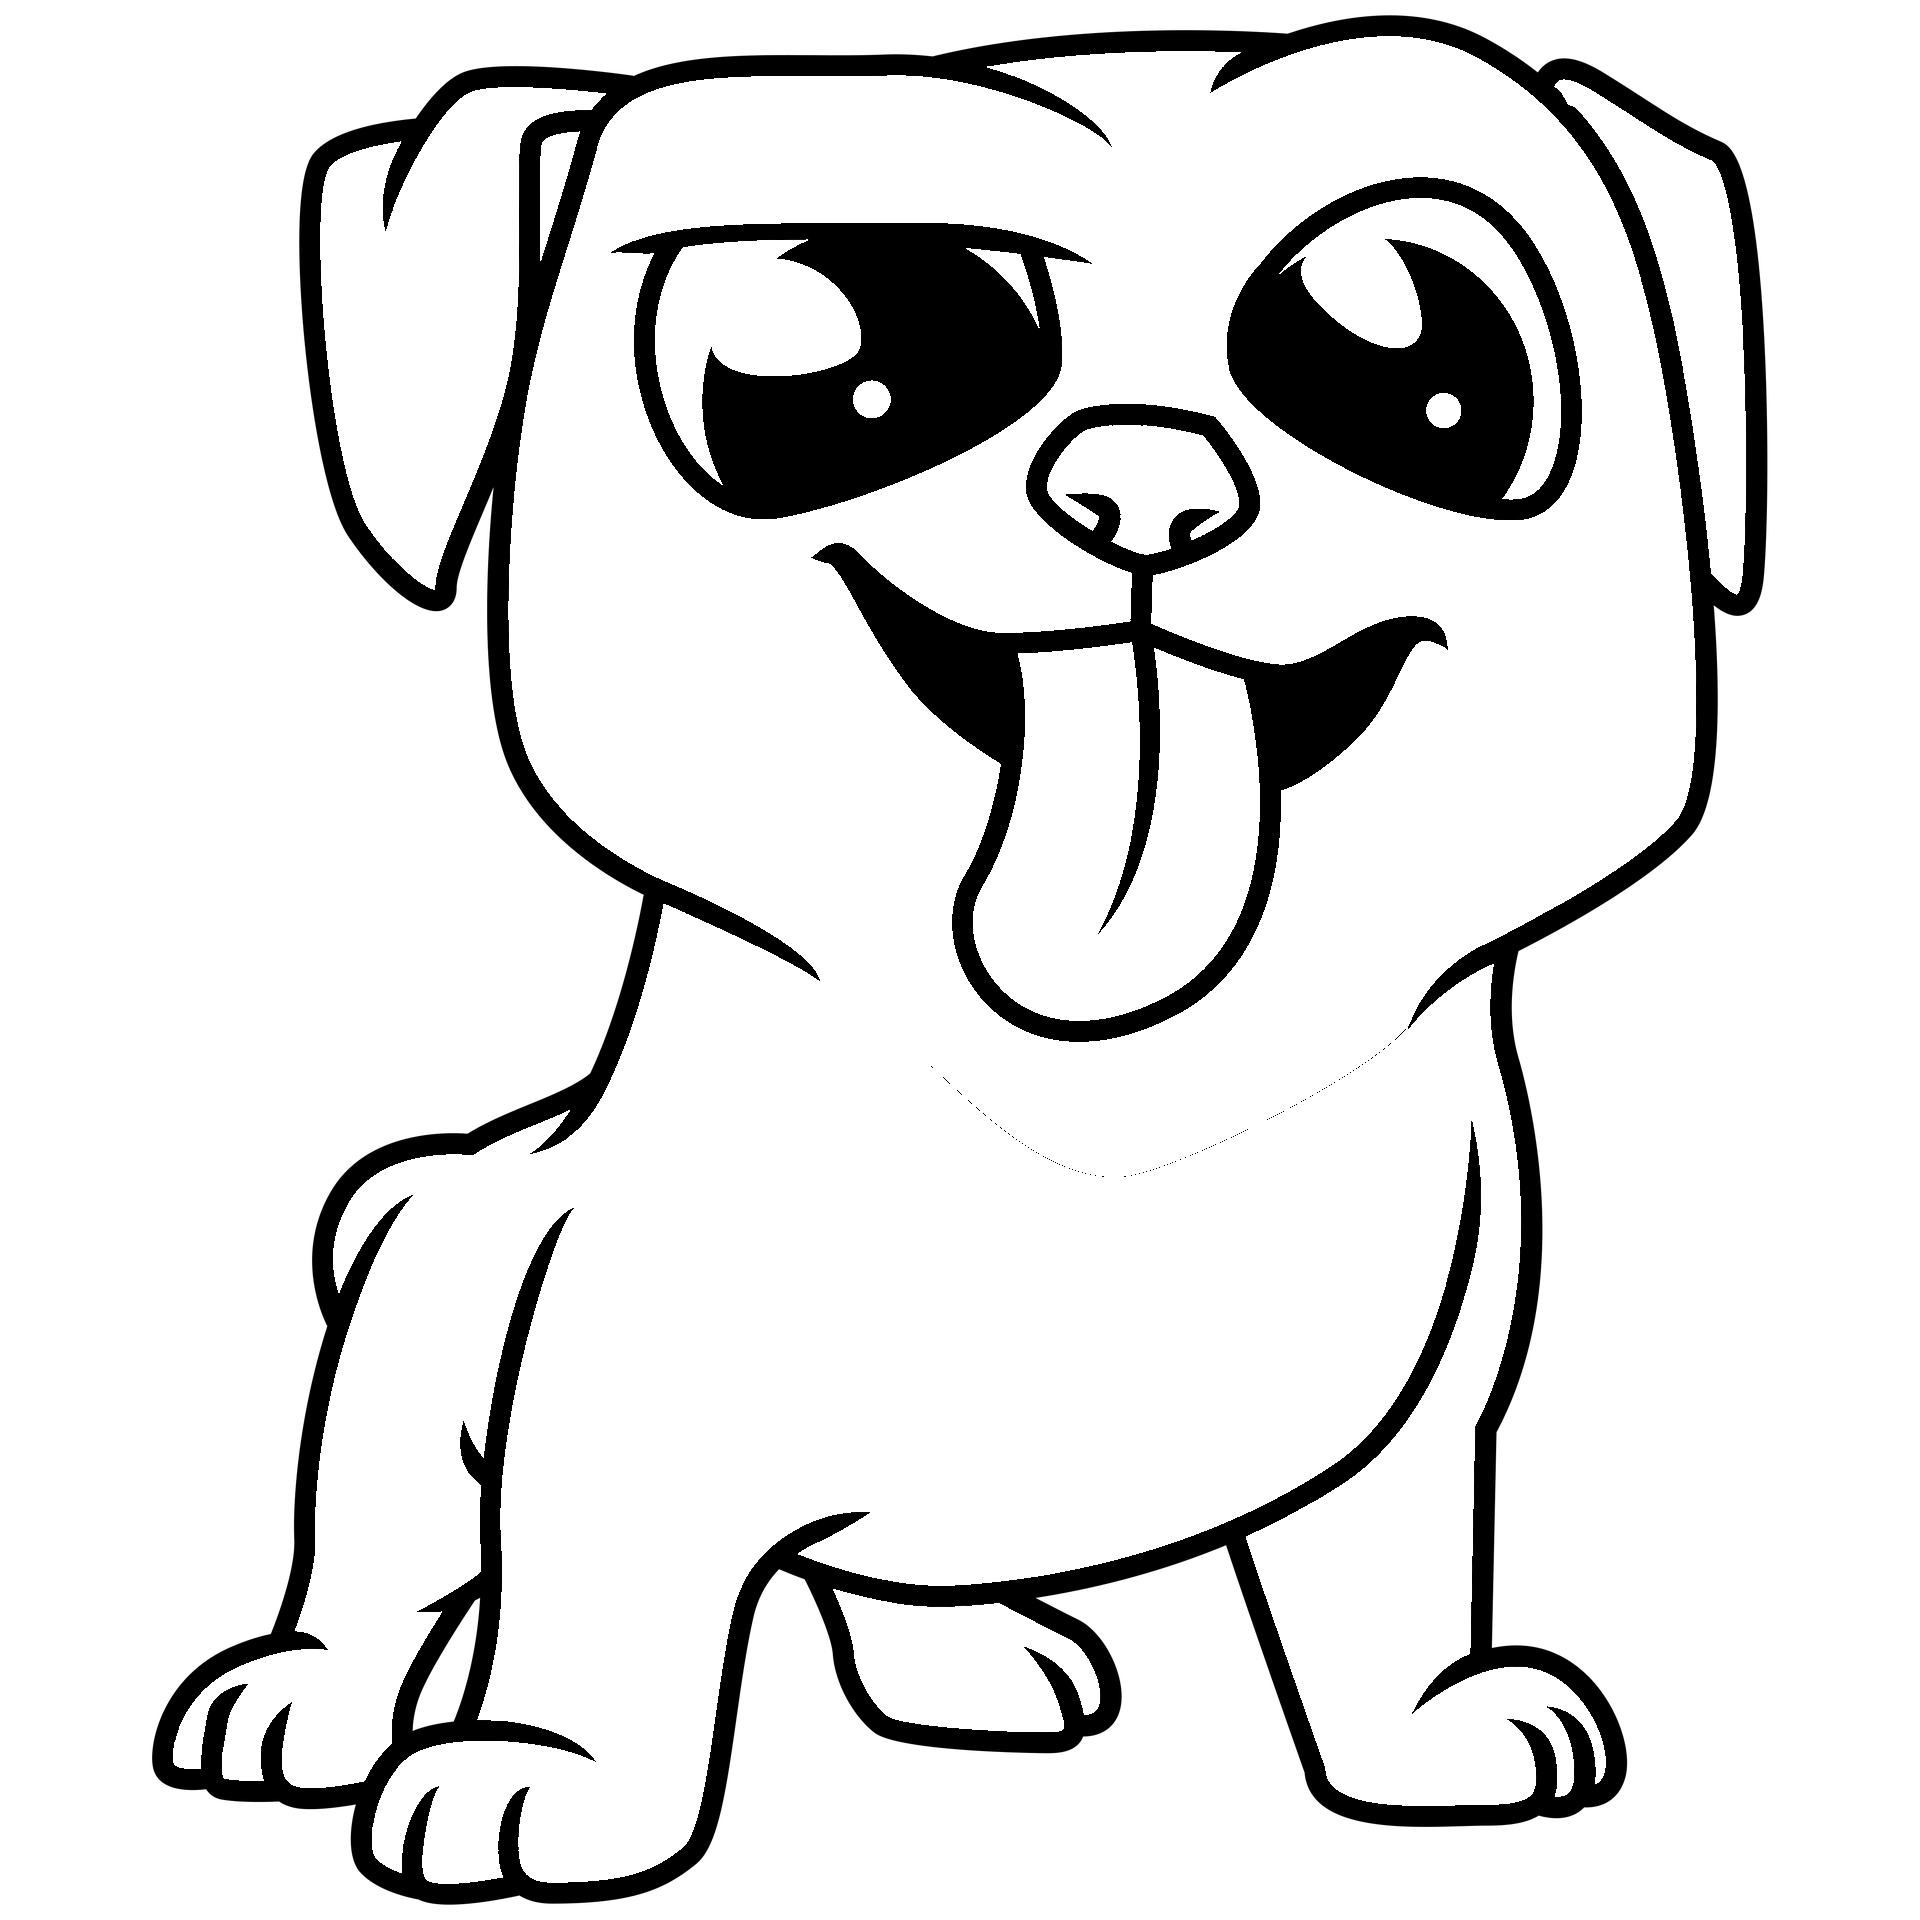 Disegno da colorare di cucciolo di cane Rottweiler stile kawaii